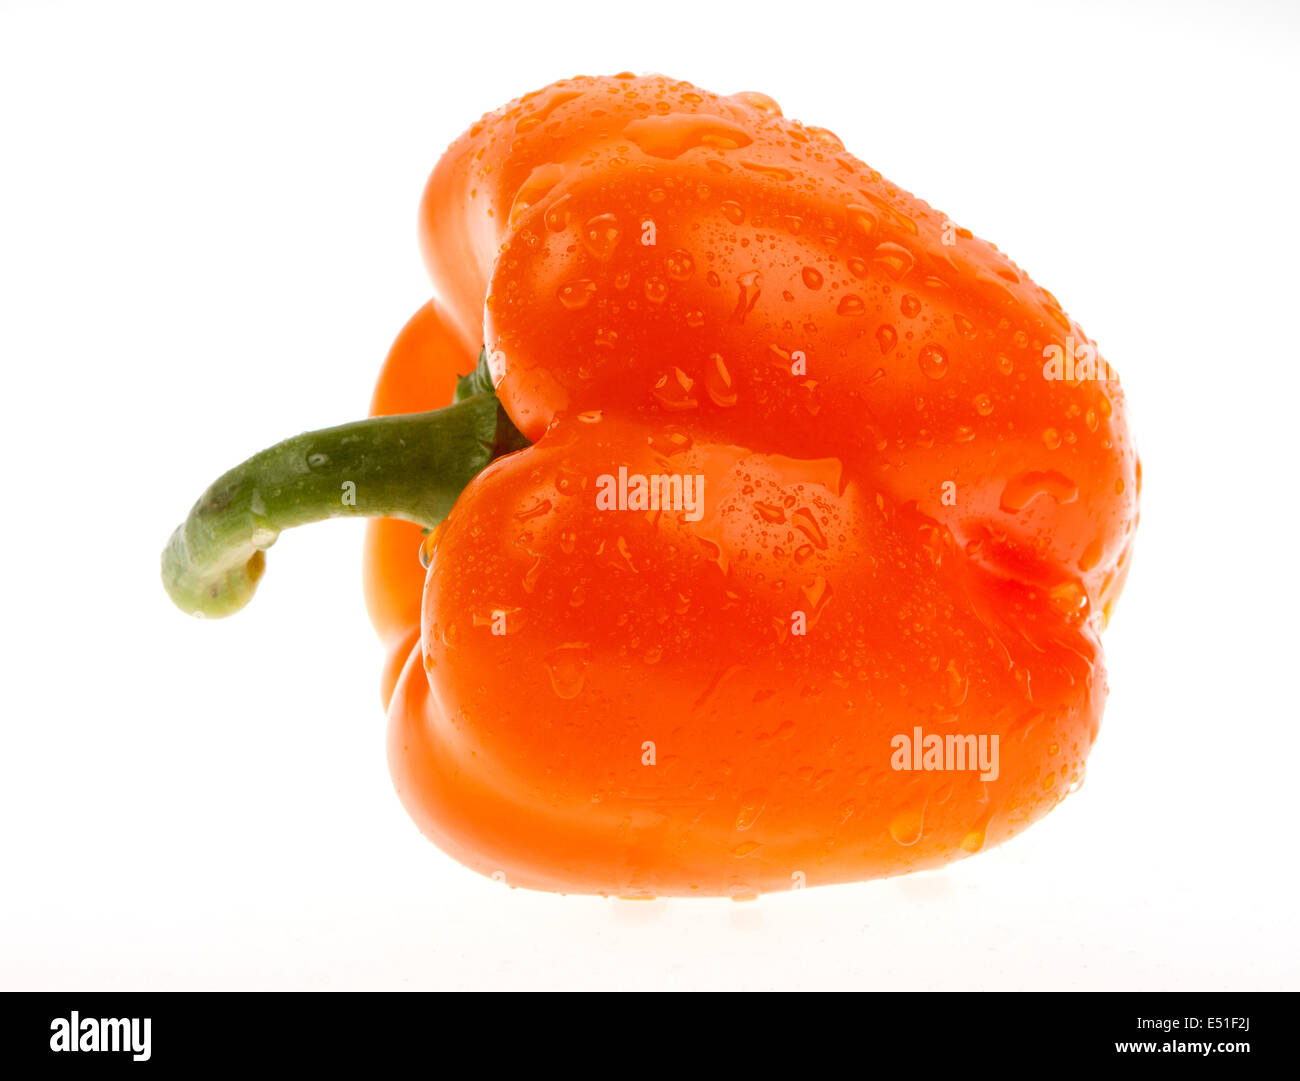 Orange bell pepper Stock Photo